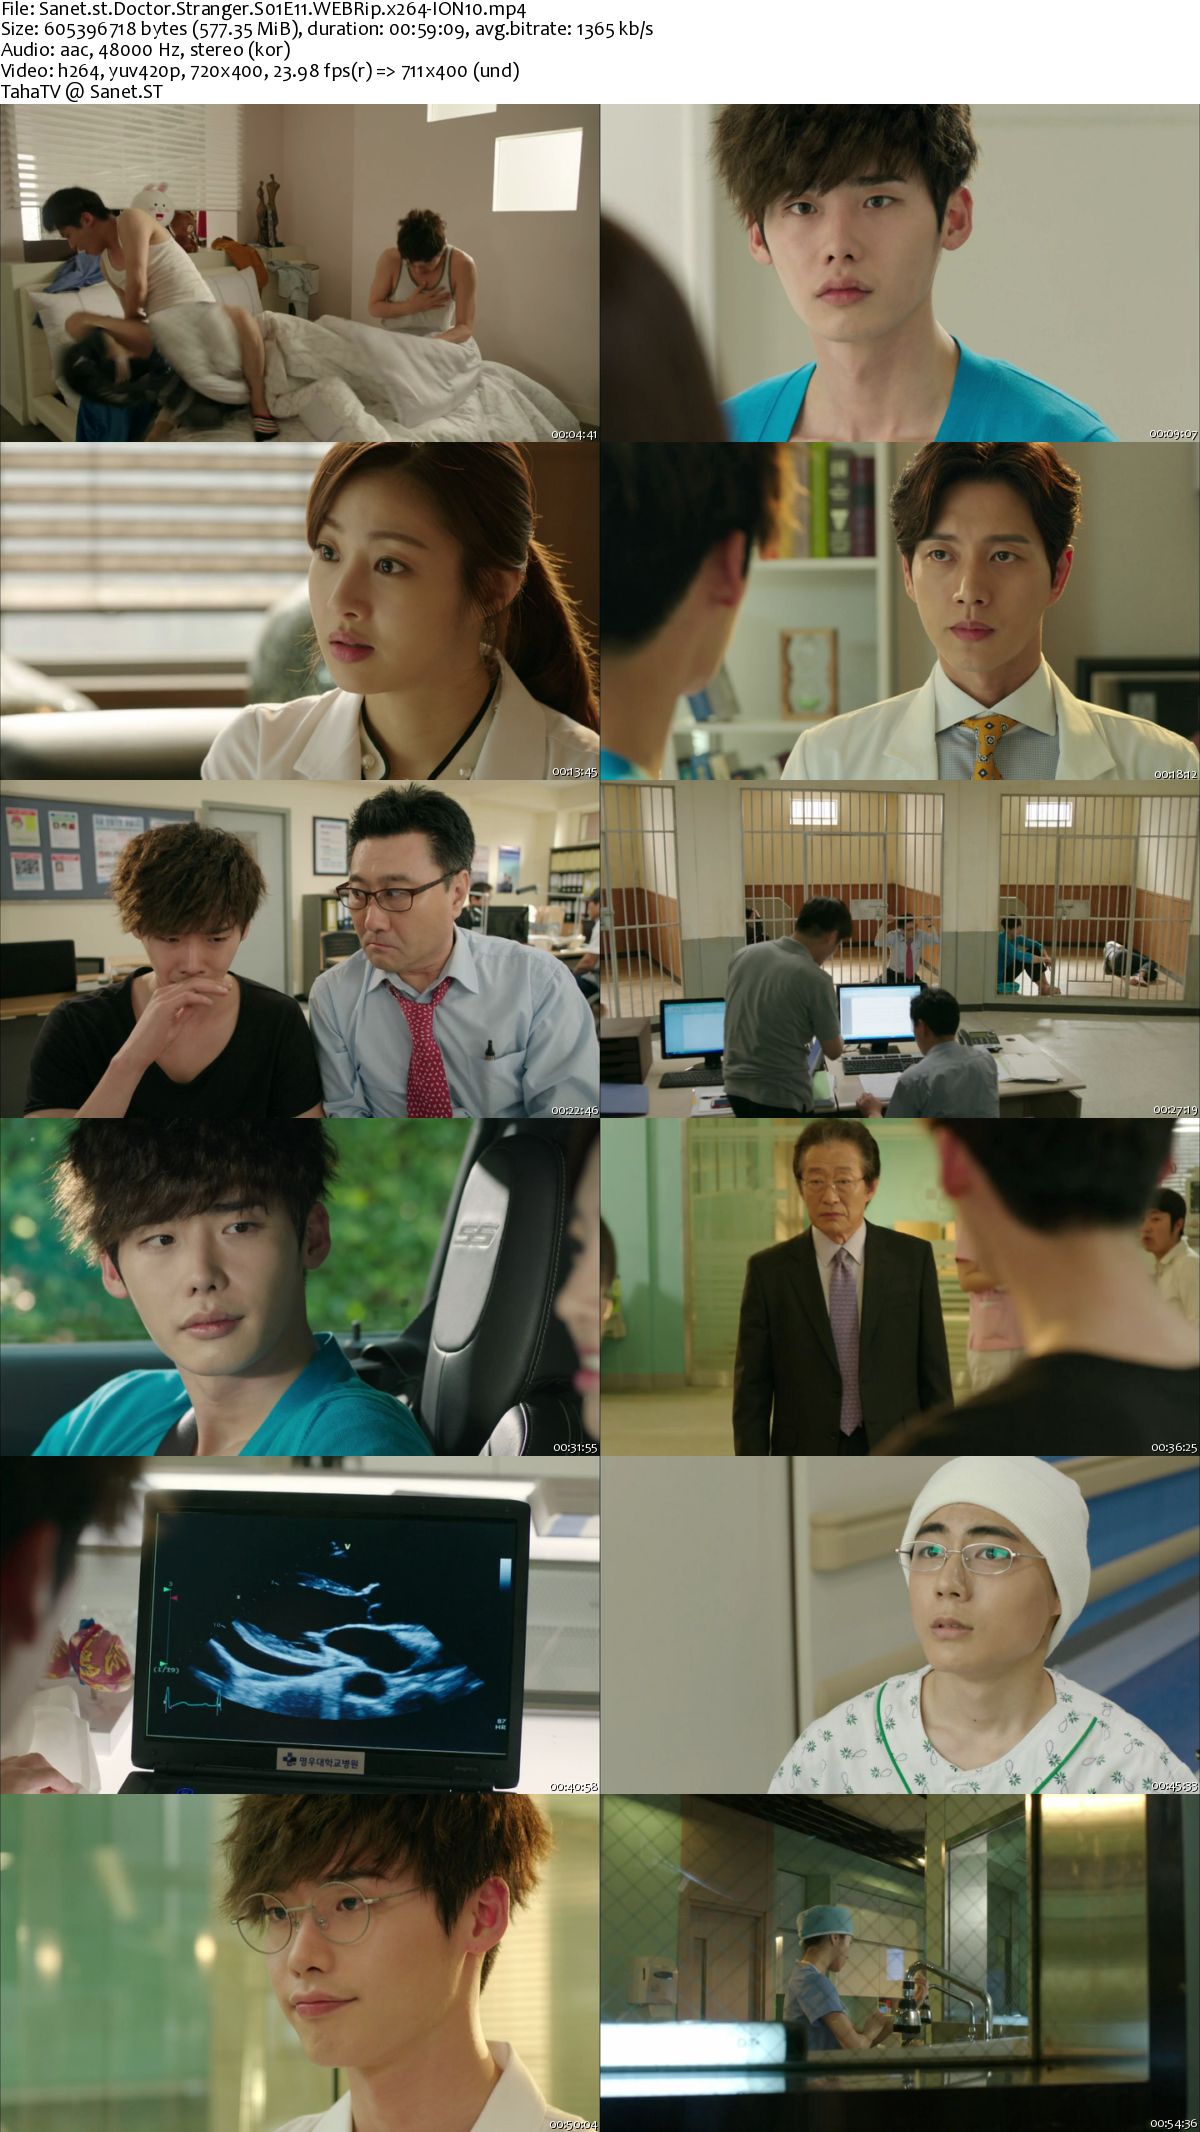 download drama korea doctor stranger 480p